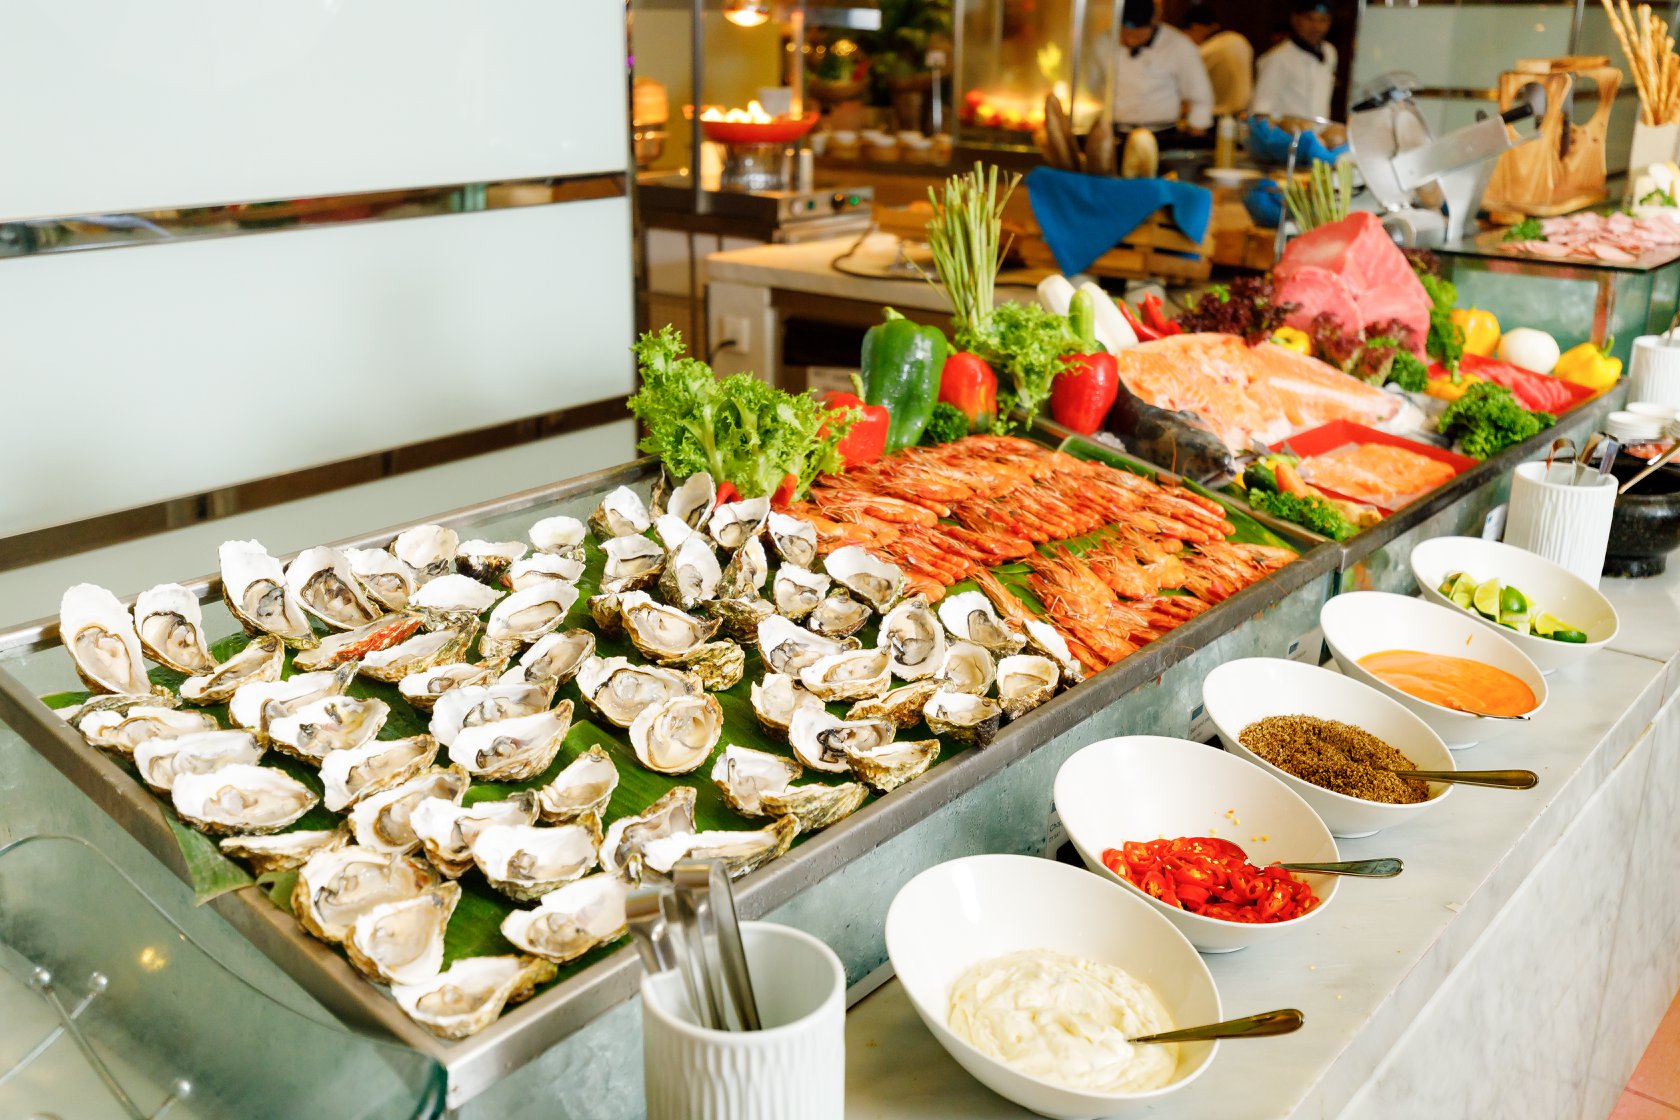 Buffet BBQ Hải Sản Mường Thanh Grand Nha Trang Hotel là một nhà hàng buffet hải sản và thịt nướng ở Nha Trang, đúng không?
